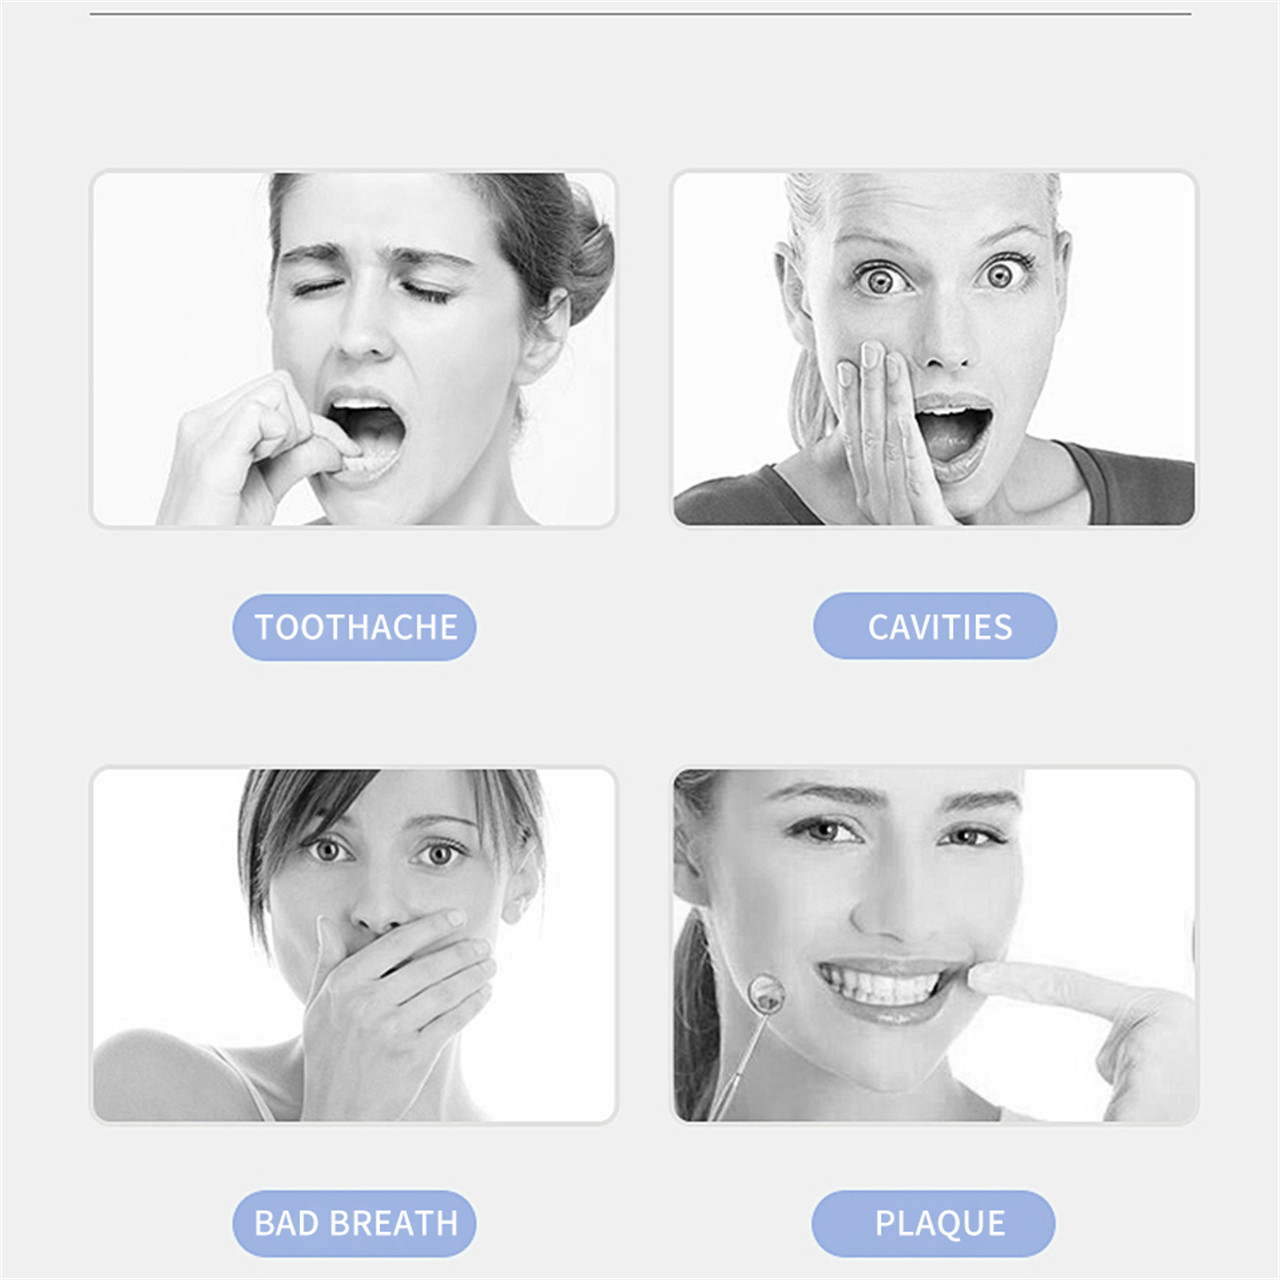 Дуран утасгүй зөөврийн шүдний амны усалгааны цахилгаан утас (4)